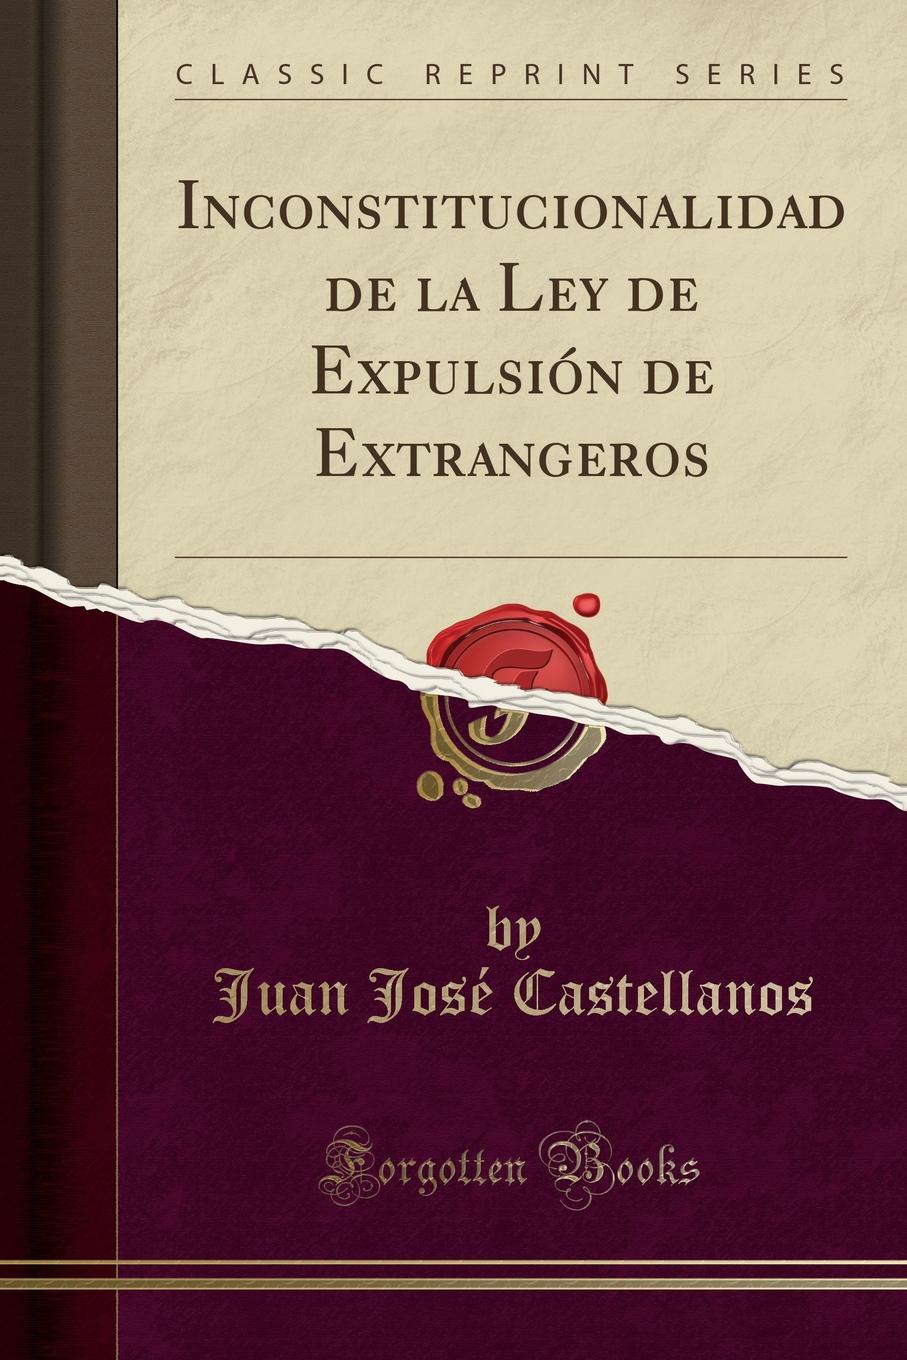 Juan José Castellanos Inconstitucionalidad de la Ley de Expulsion de Extrangeros (Classic Reprint)